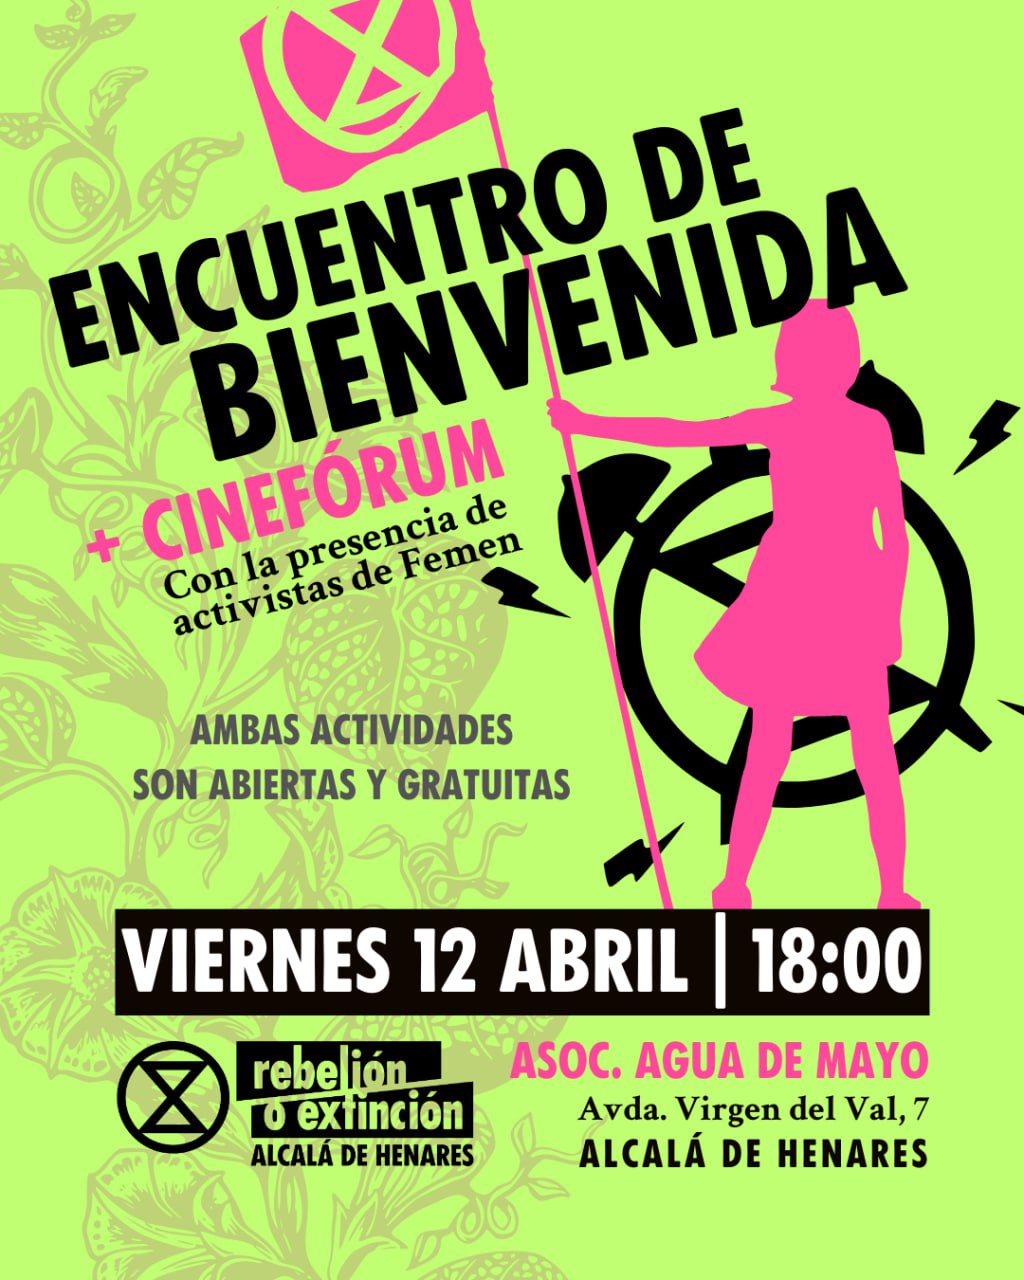 Encuentro de bienvenida más cinefórum con la presencia de activistas de Femen. Viernes 12 de abril a las 18:00h en la Asociación Agua de Mayo de Alcalá de Henares. Ambas actividades son abiertas y gratuitas